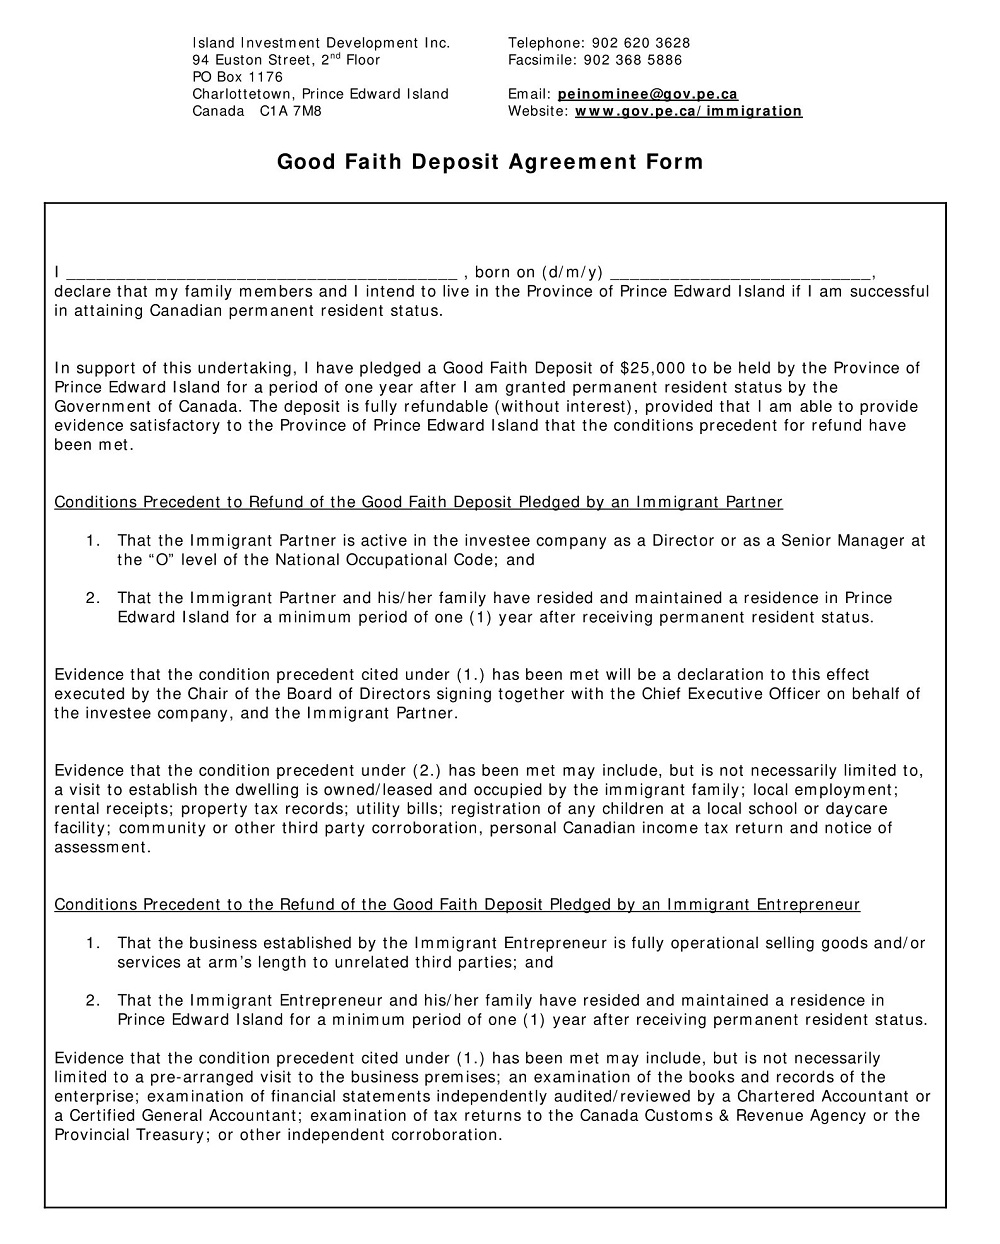 Good Faith Deposit Agreement Form & Template